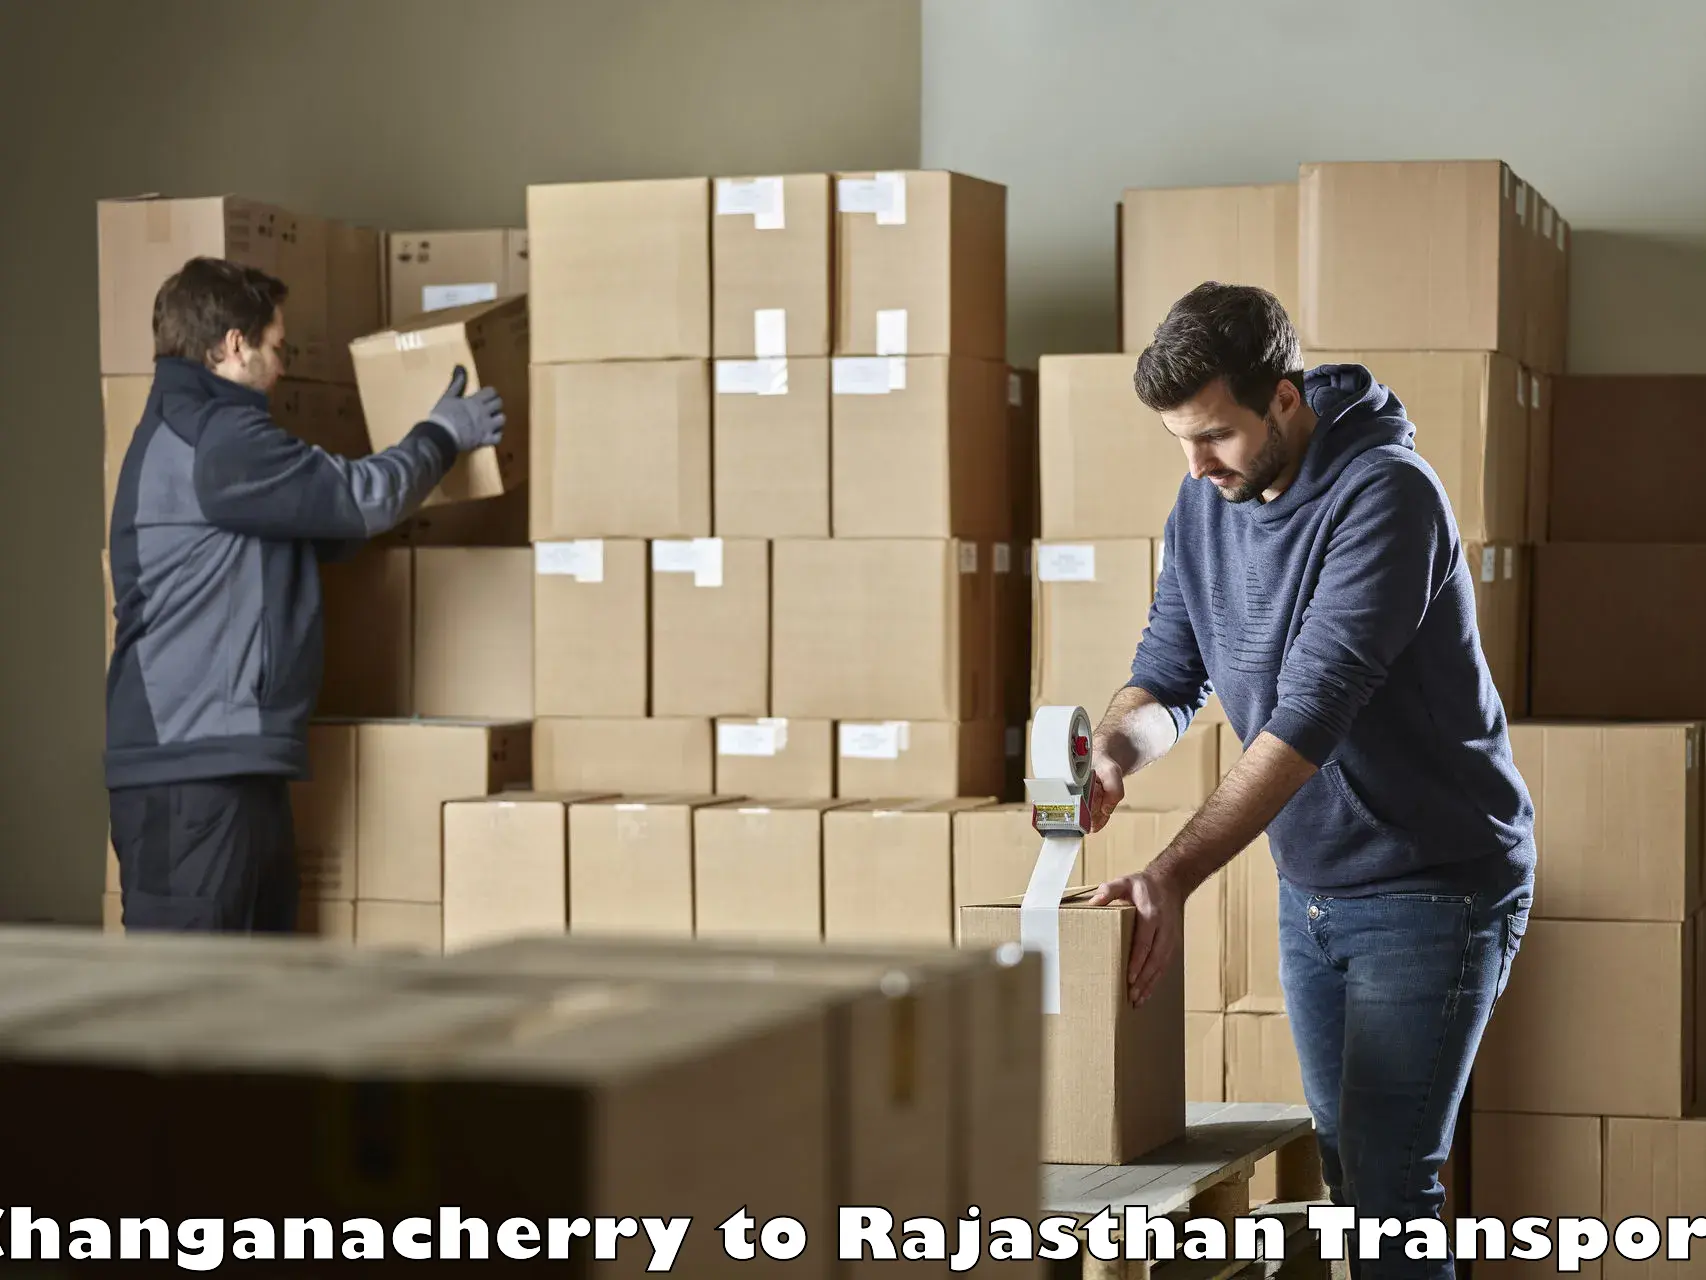 Furniture transport service Changanacherry to Nasirabad